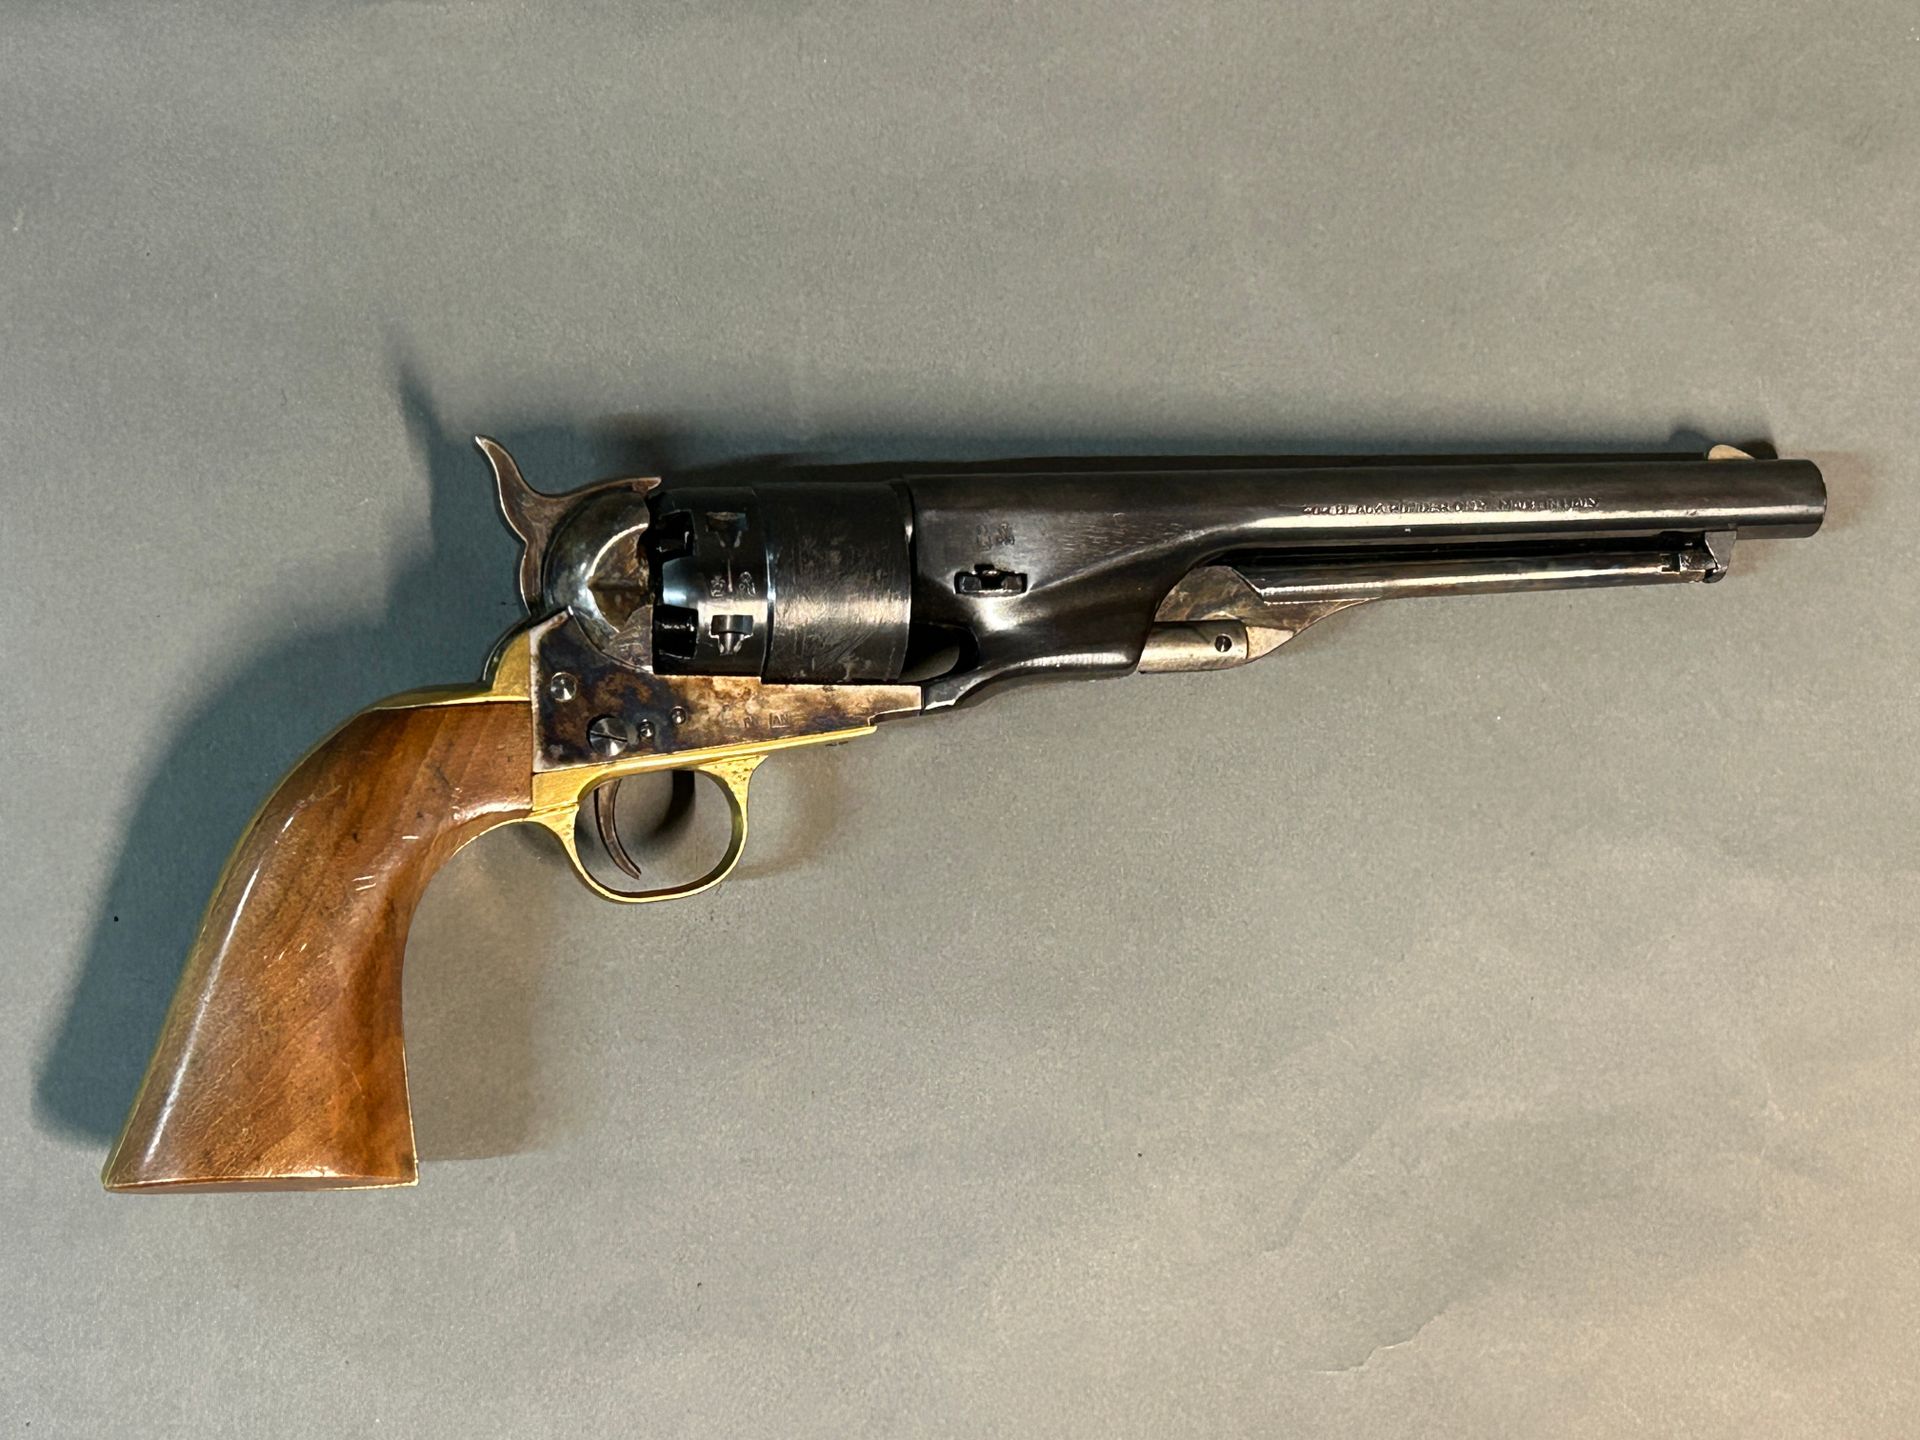 Null Revolver tipo Colt Army 1860.

Sei colpi calibro 44 con polvere nera. 

In &hellip;